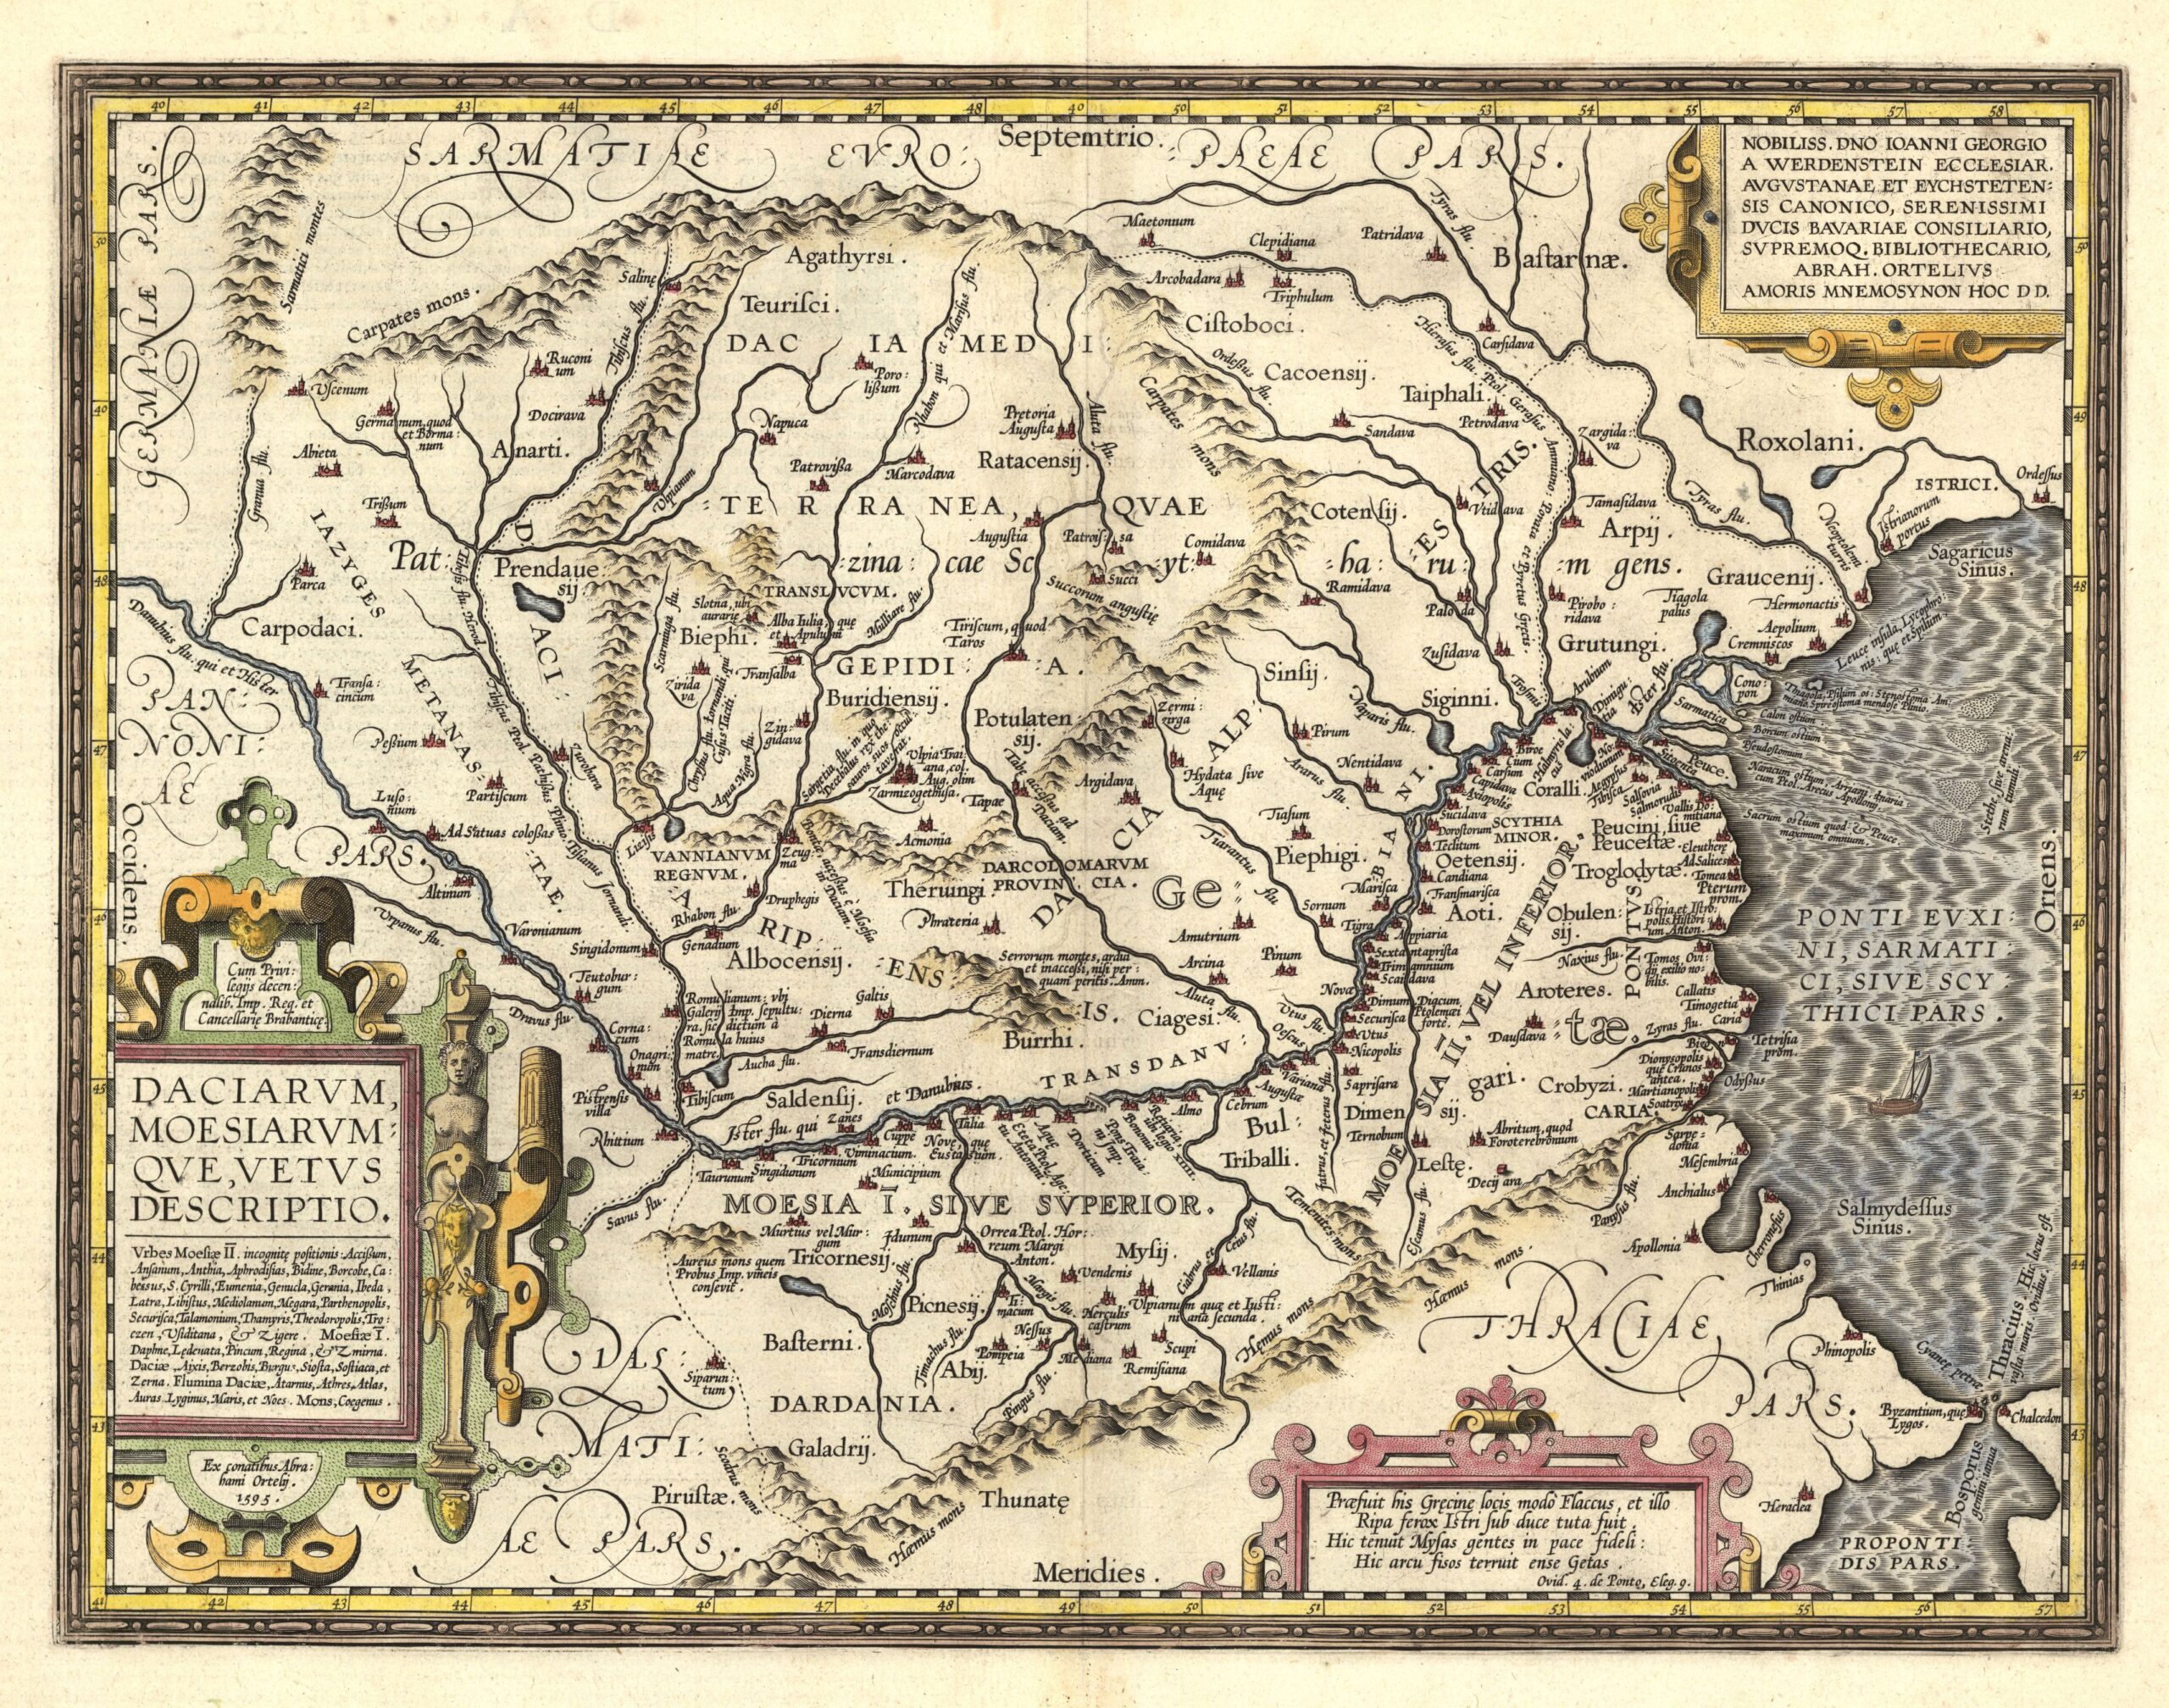 Agathyrsi-Dacia-Europe-1595-Daciarvm-Moesiarvm-Qve-Vetvs-Descriptio